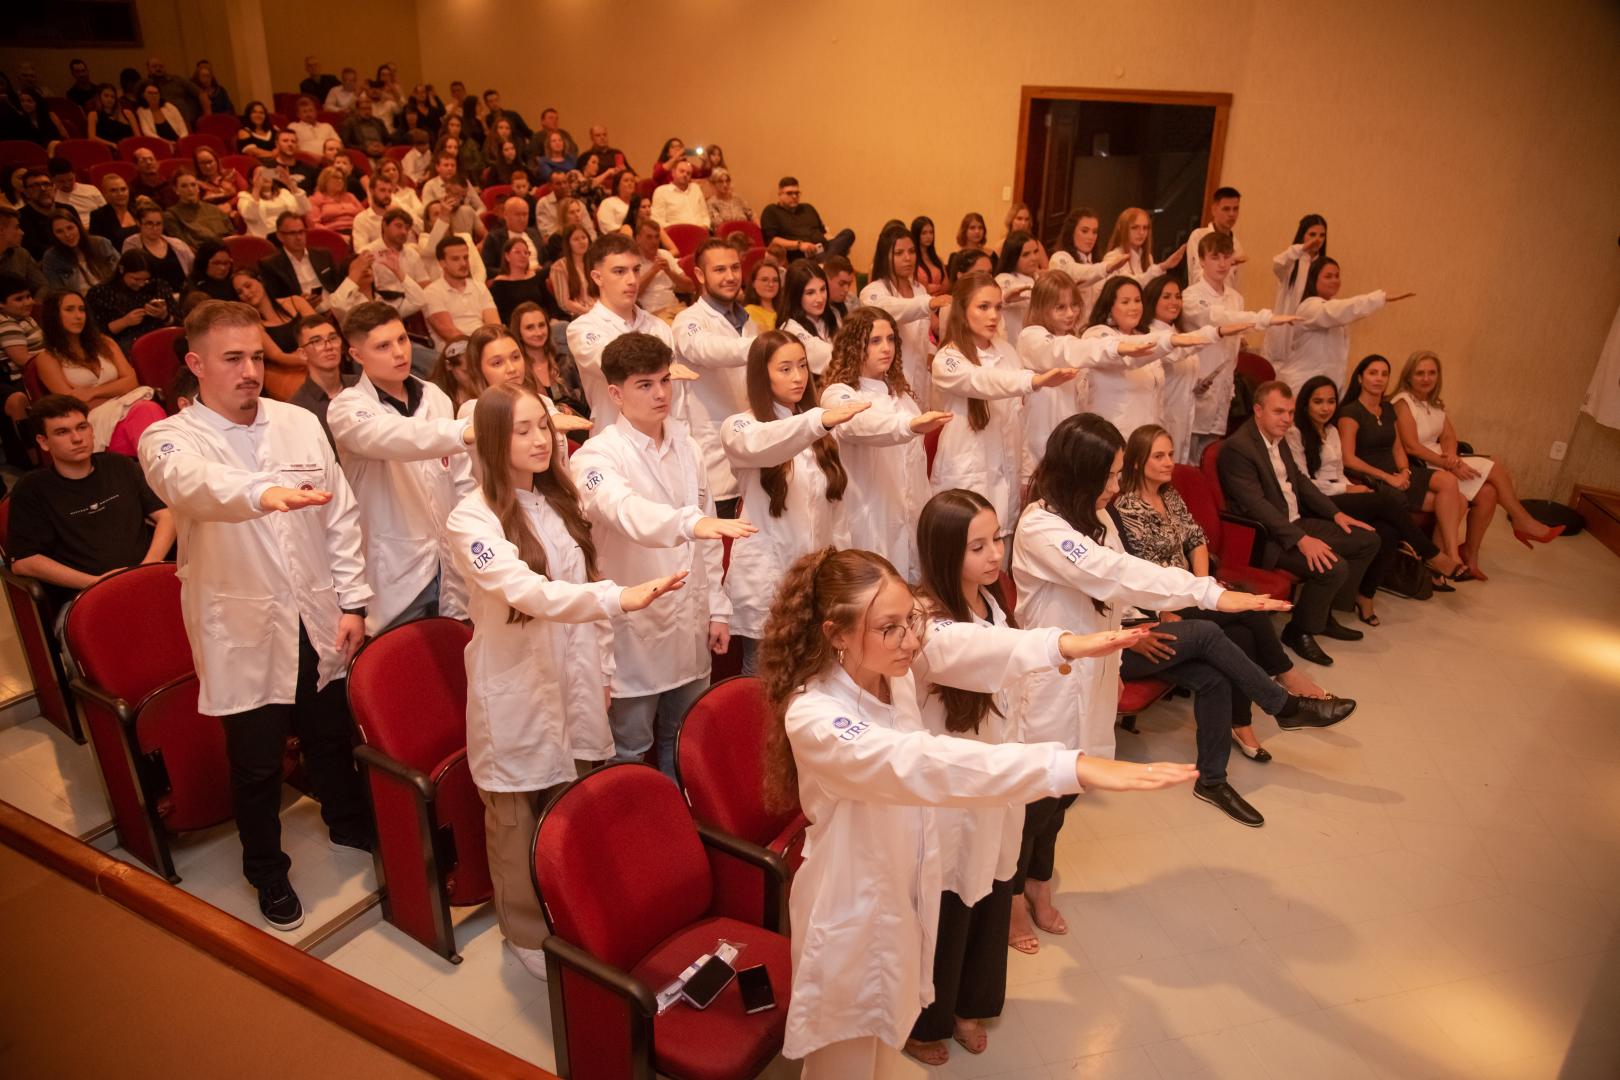 Os alunos fizeram o juramento do Curso de Odontologia, comprometendo-se publicamente a exercer a profisso com dignidade, tica e respeito